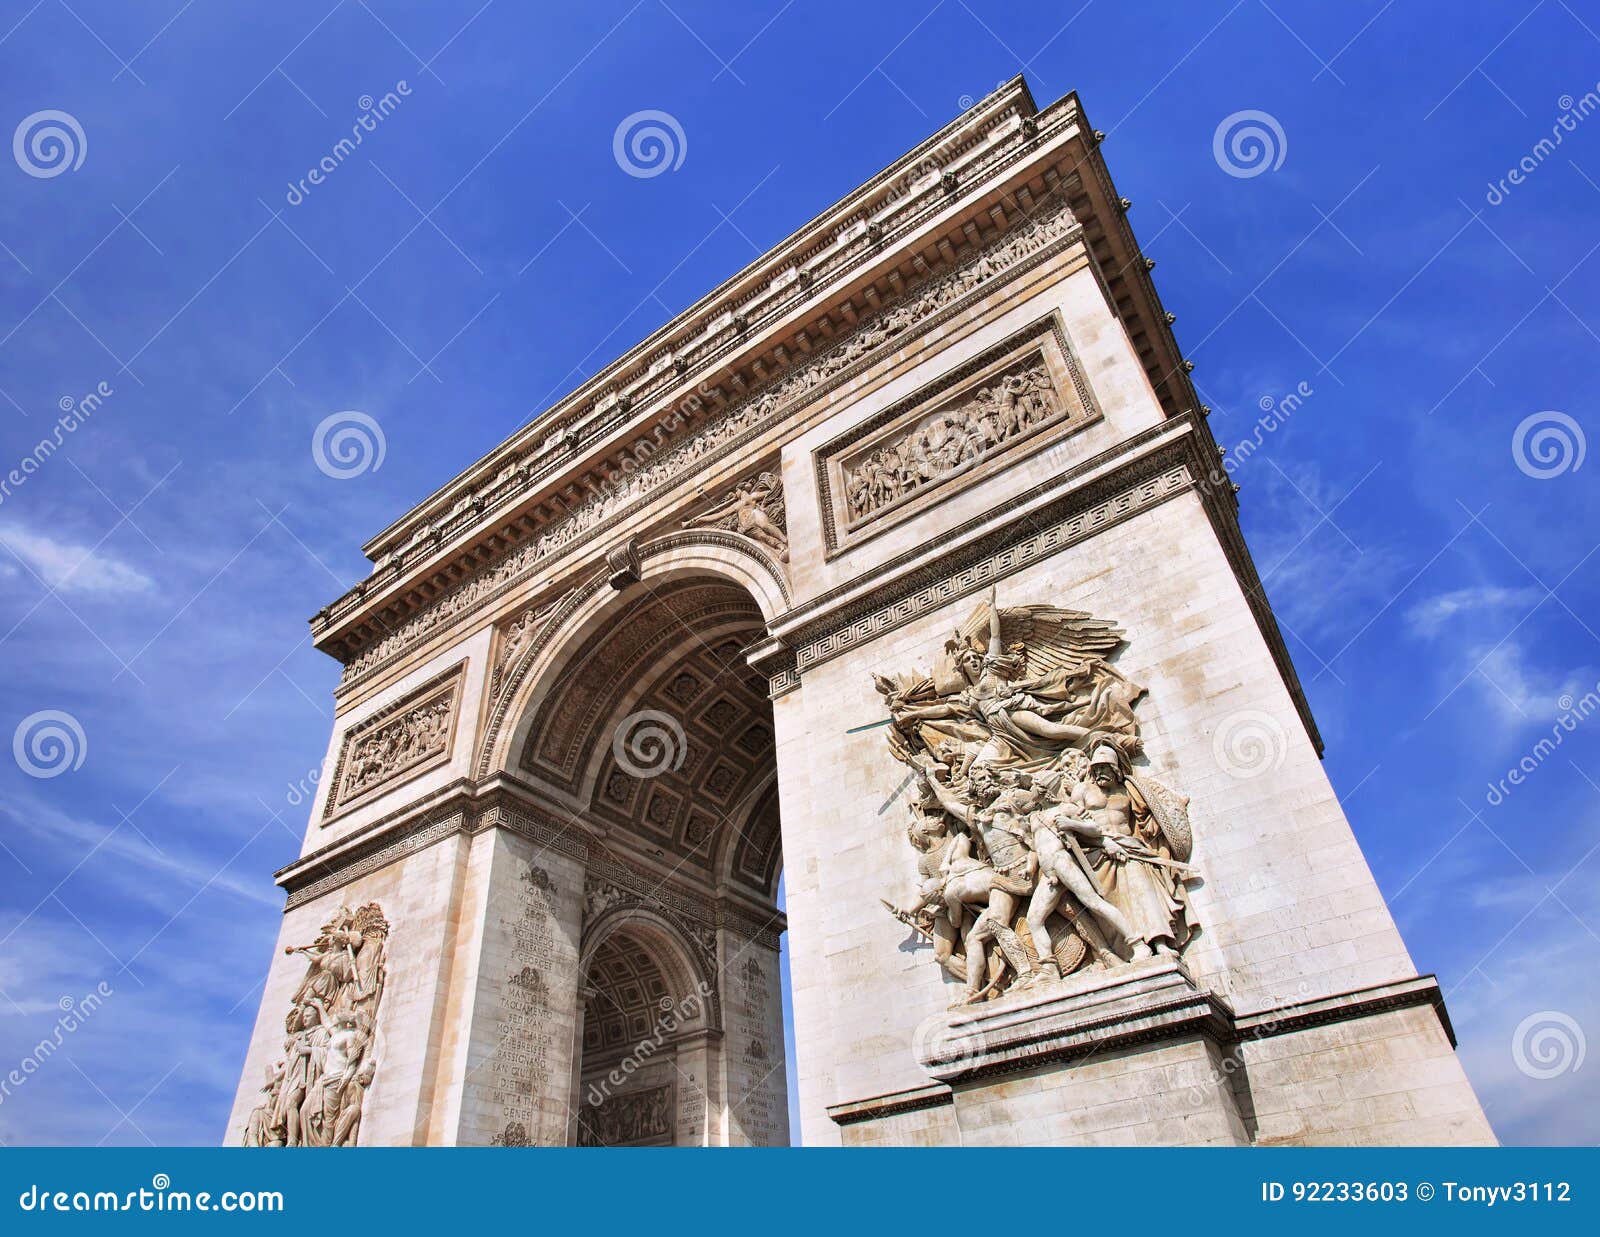 world famous arce de triomphe against a blue sky, paris